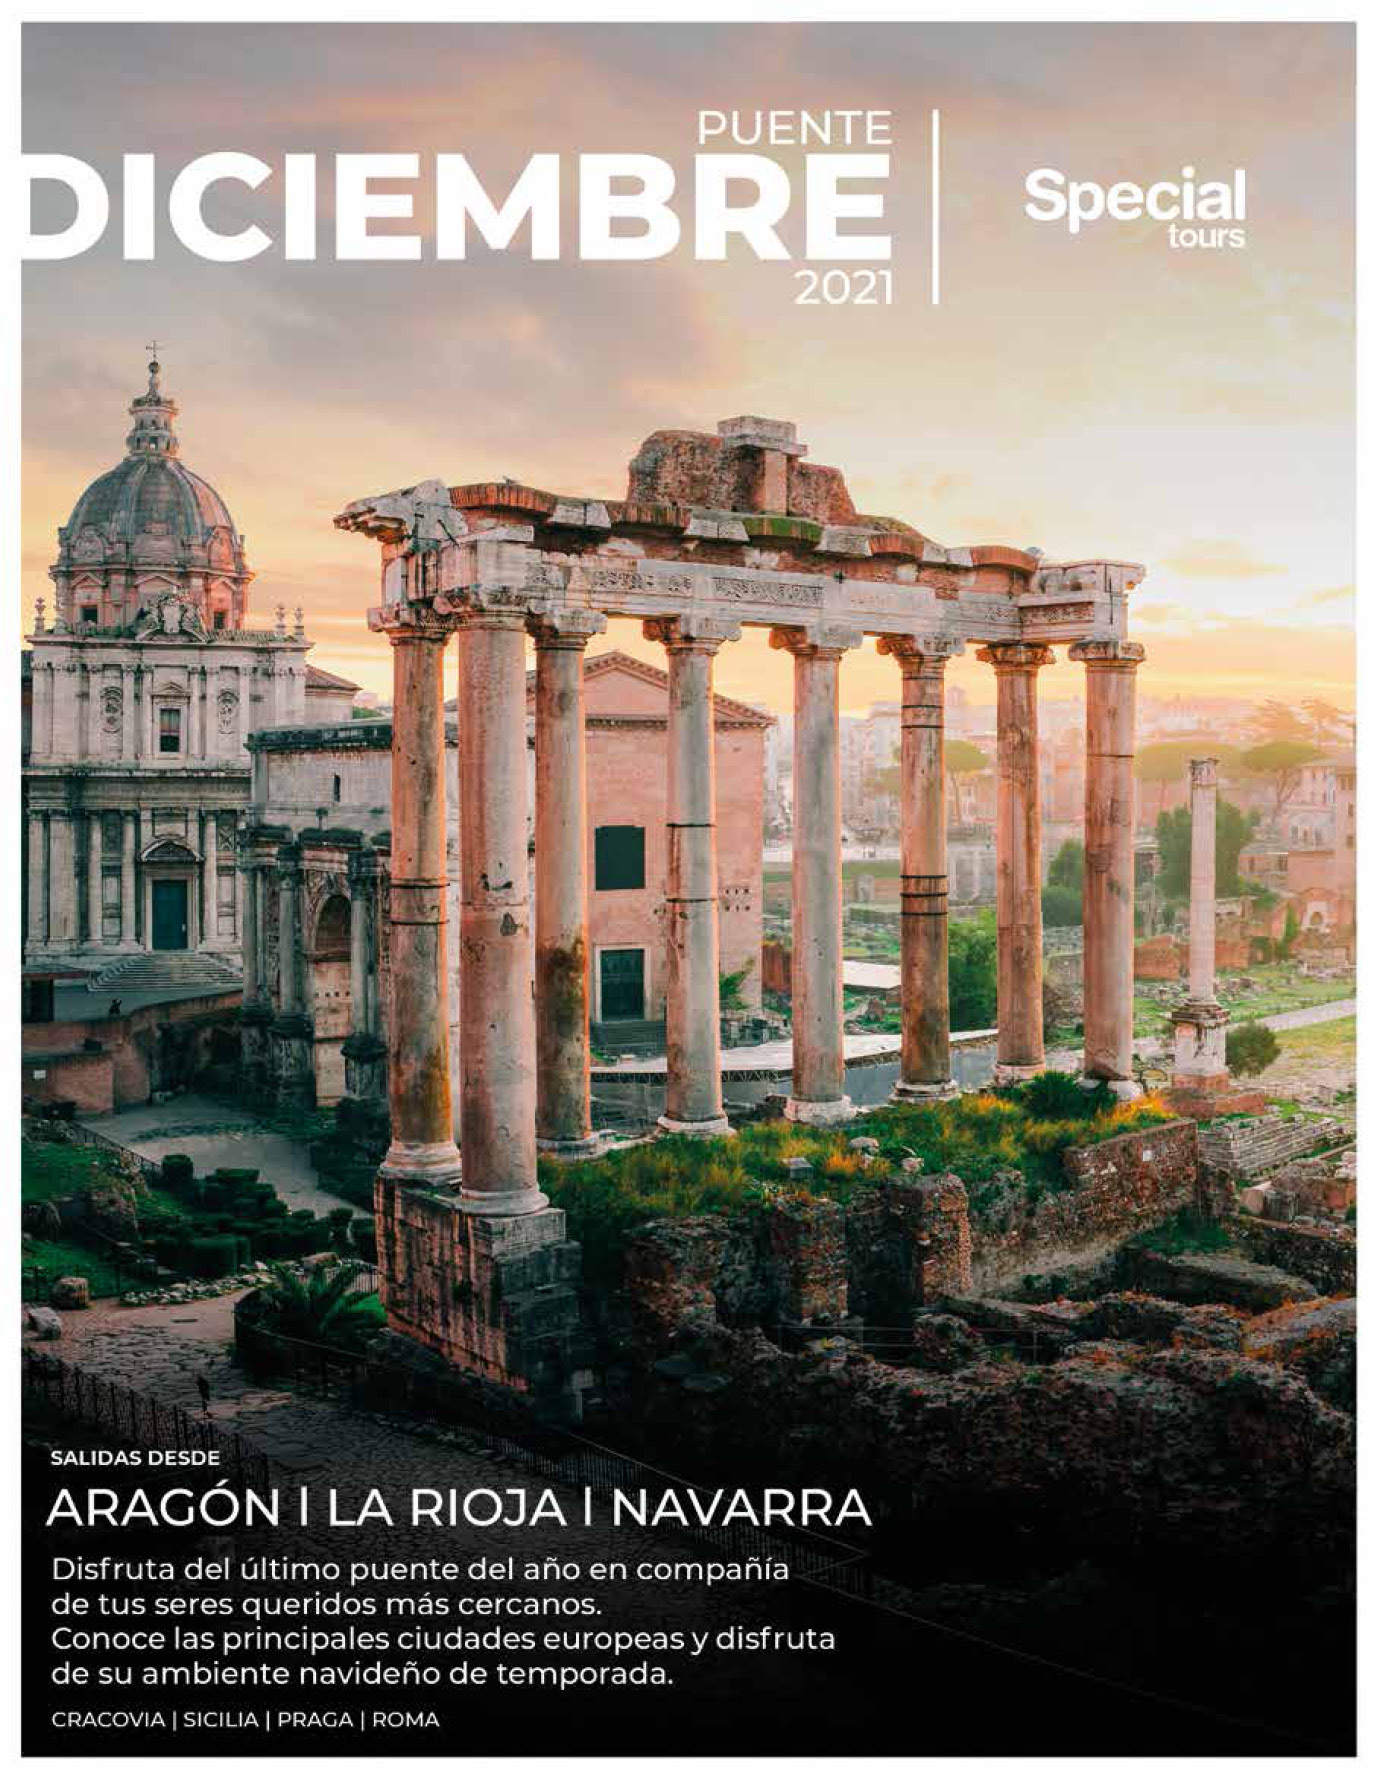 Catalogo Special Tours Puente de Diciembre 2021 en Europa salidas con vuelos directos desde Aragon La Rioja Navarra